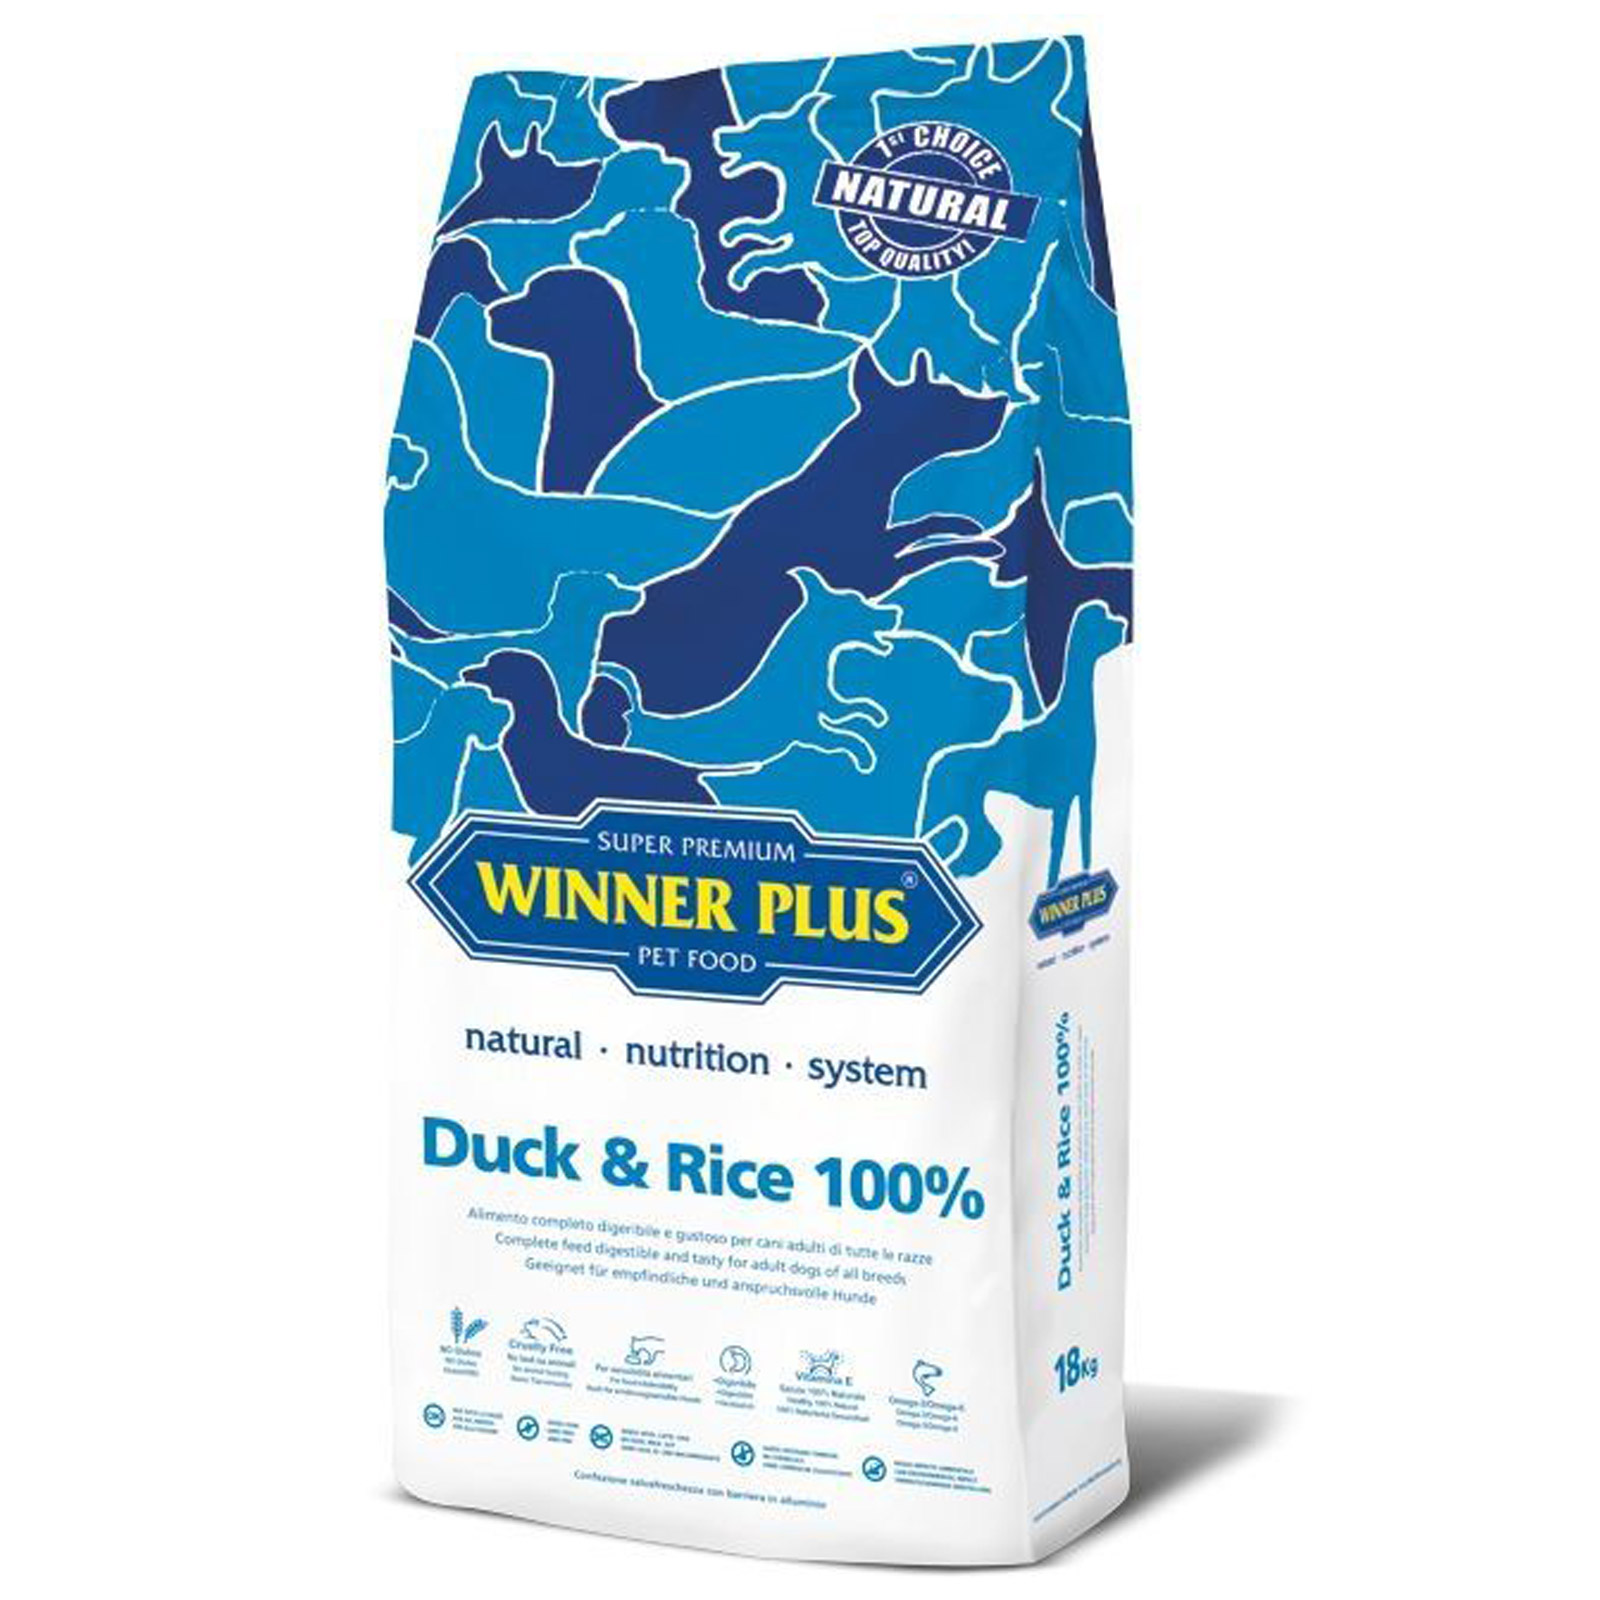 Winner Plus Super Premium Duck & Rice 100%